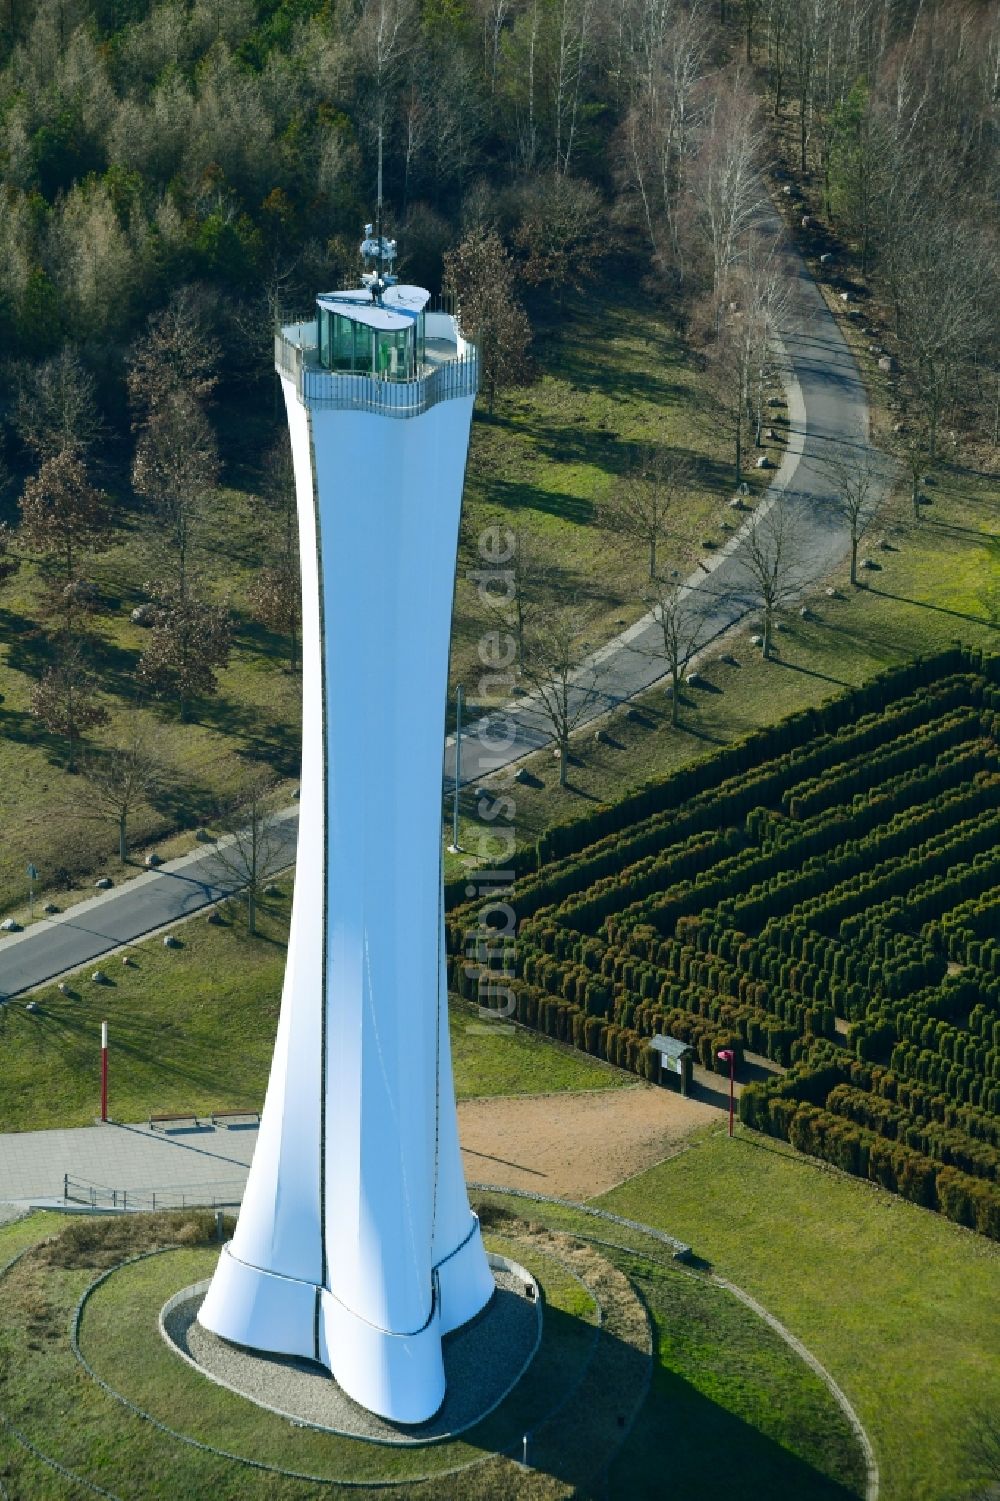 Luftaufnahme Teichland - Bauwerk des Aussichtsturmes Bärenbrücker Höhe in Teichland im Bundesland Brandenburg, Deutschland